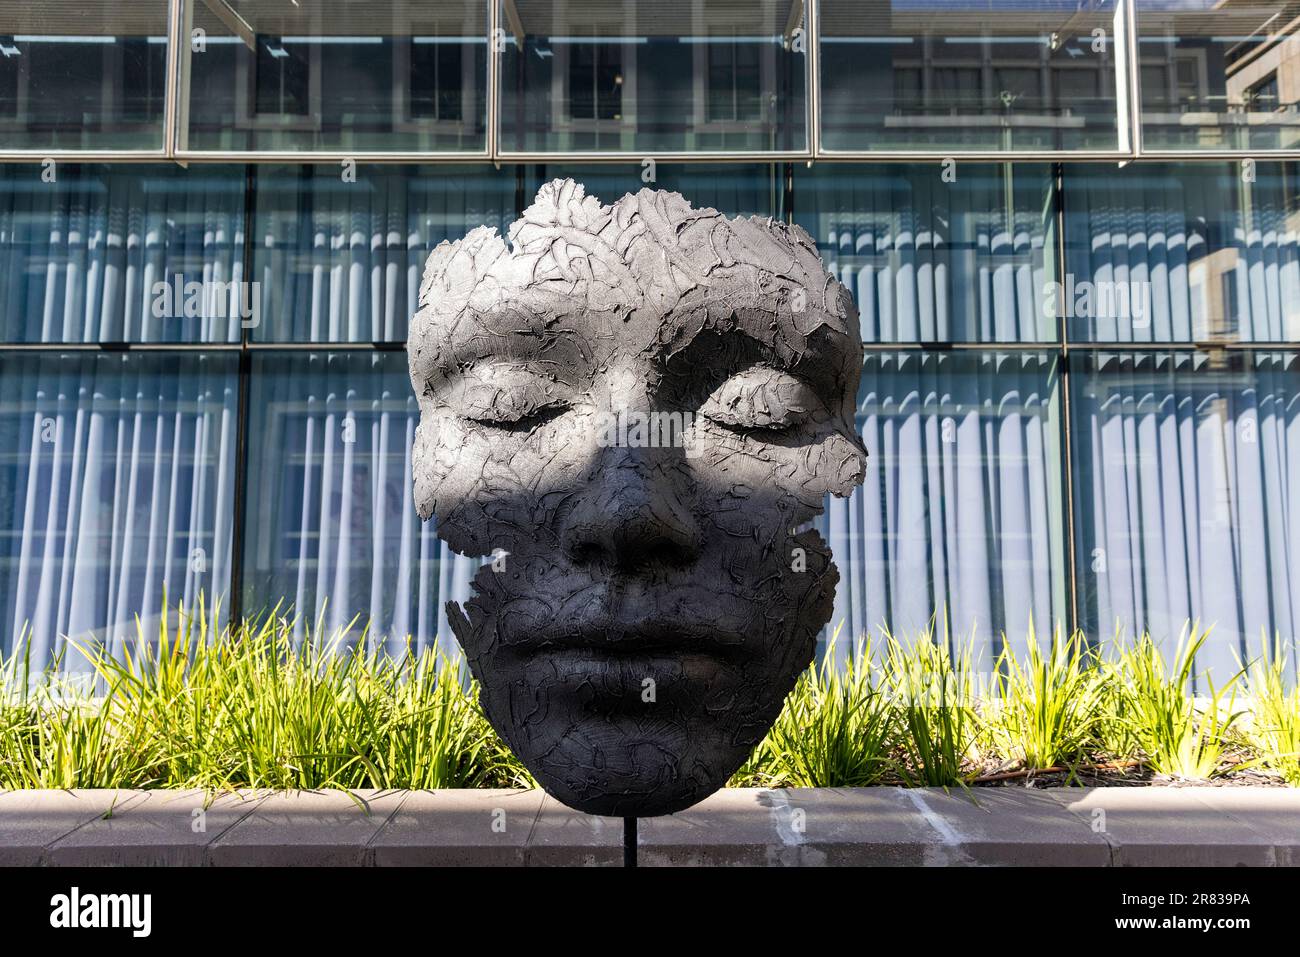 Grande sculpture en bronze de l'artiste Marco Olivier dans le front de mer de V&A - le Cap, Afrique du Sud Banque D'Images